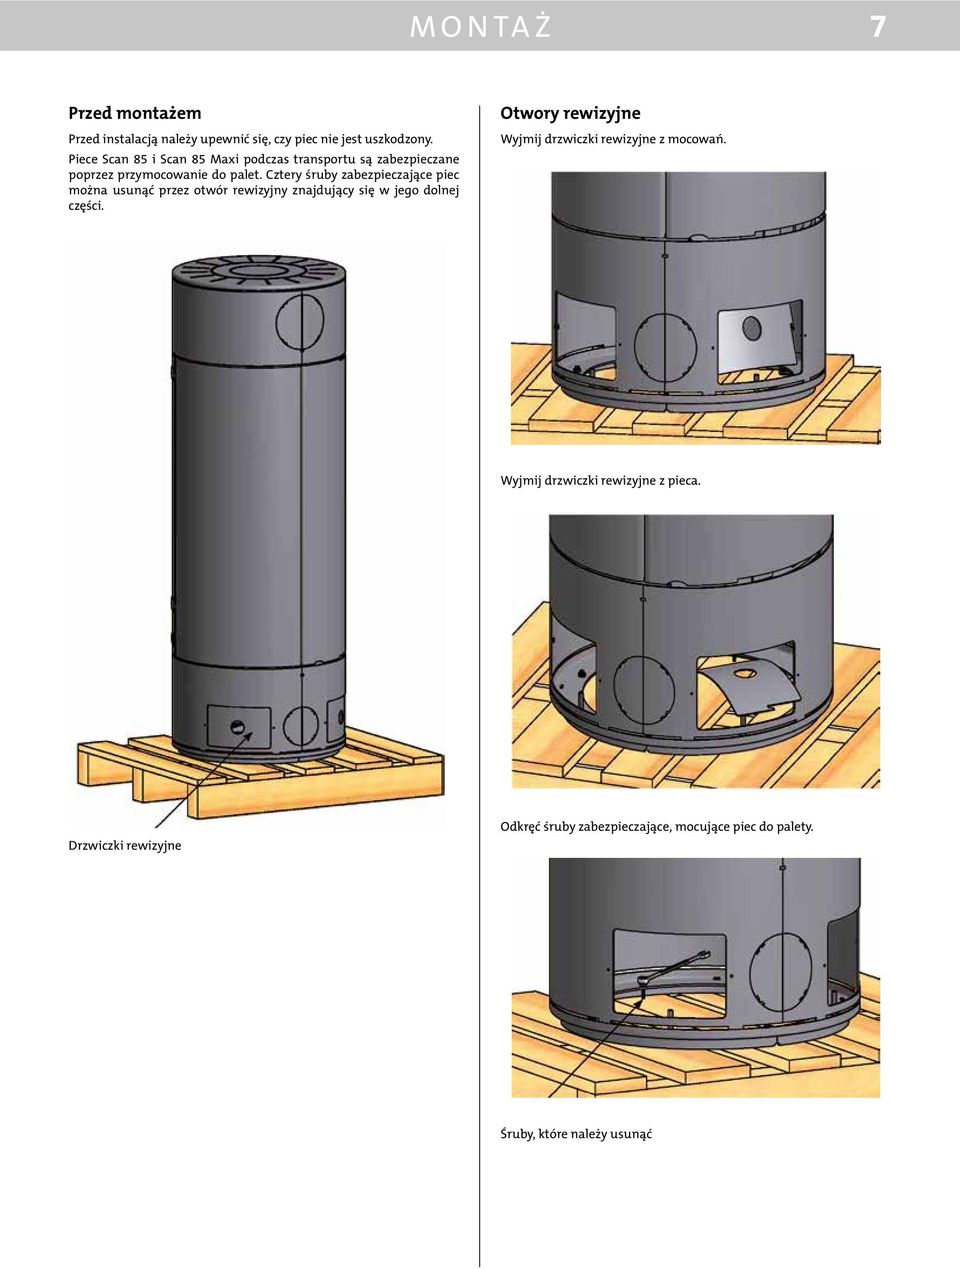 Cztery śruby zabezpieczające piec można usunąć przez otwór rewizyjny znajdujący się w jego dolnej części.